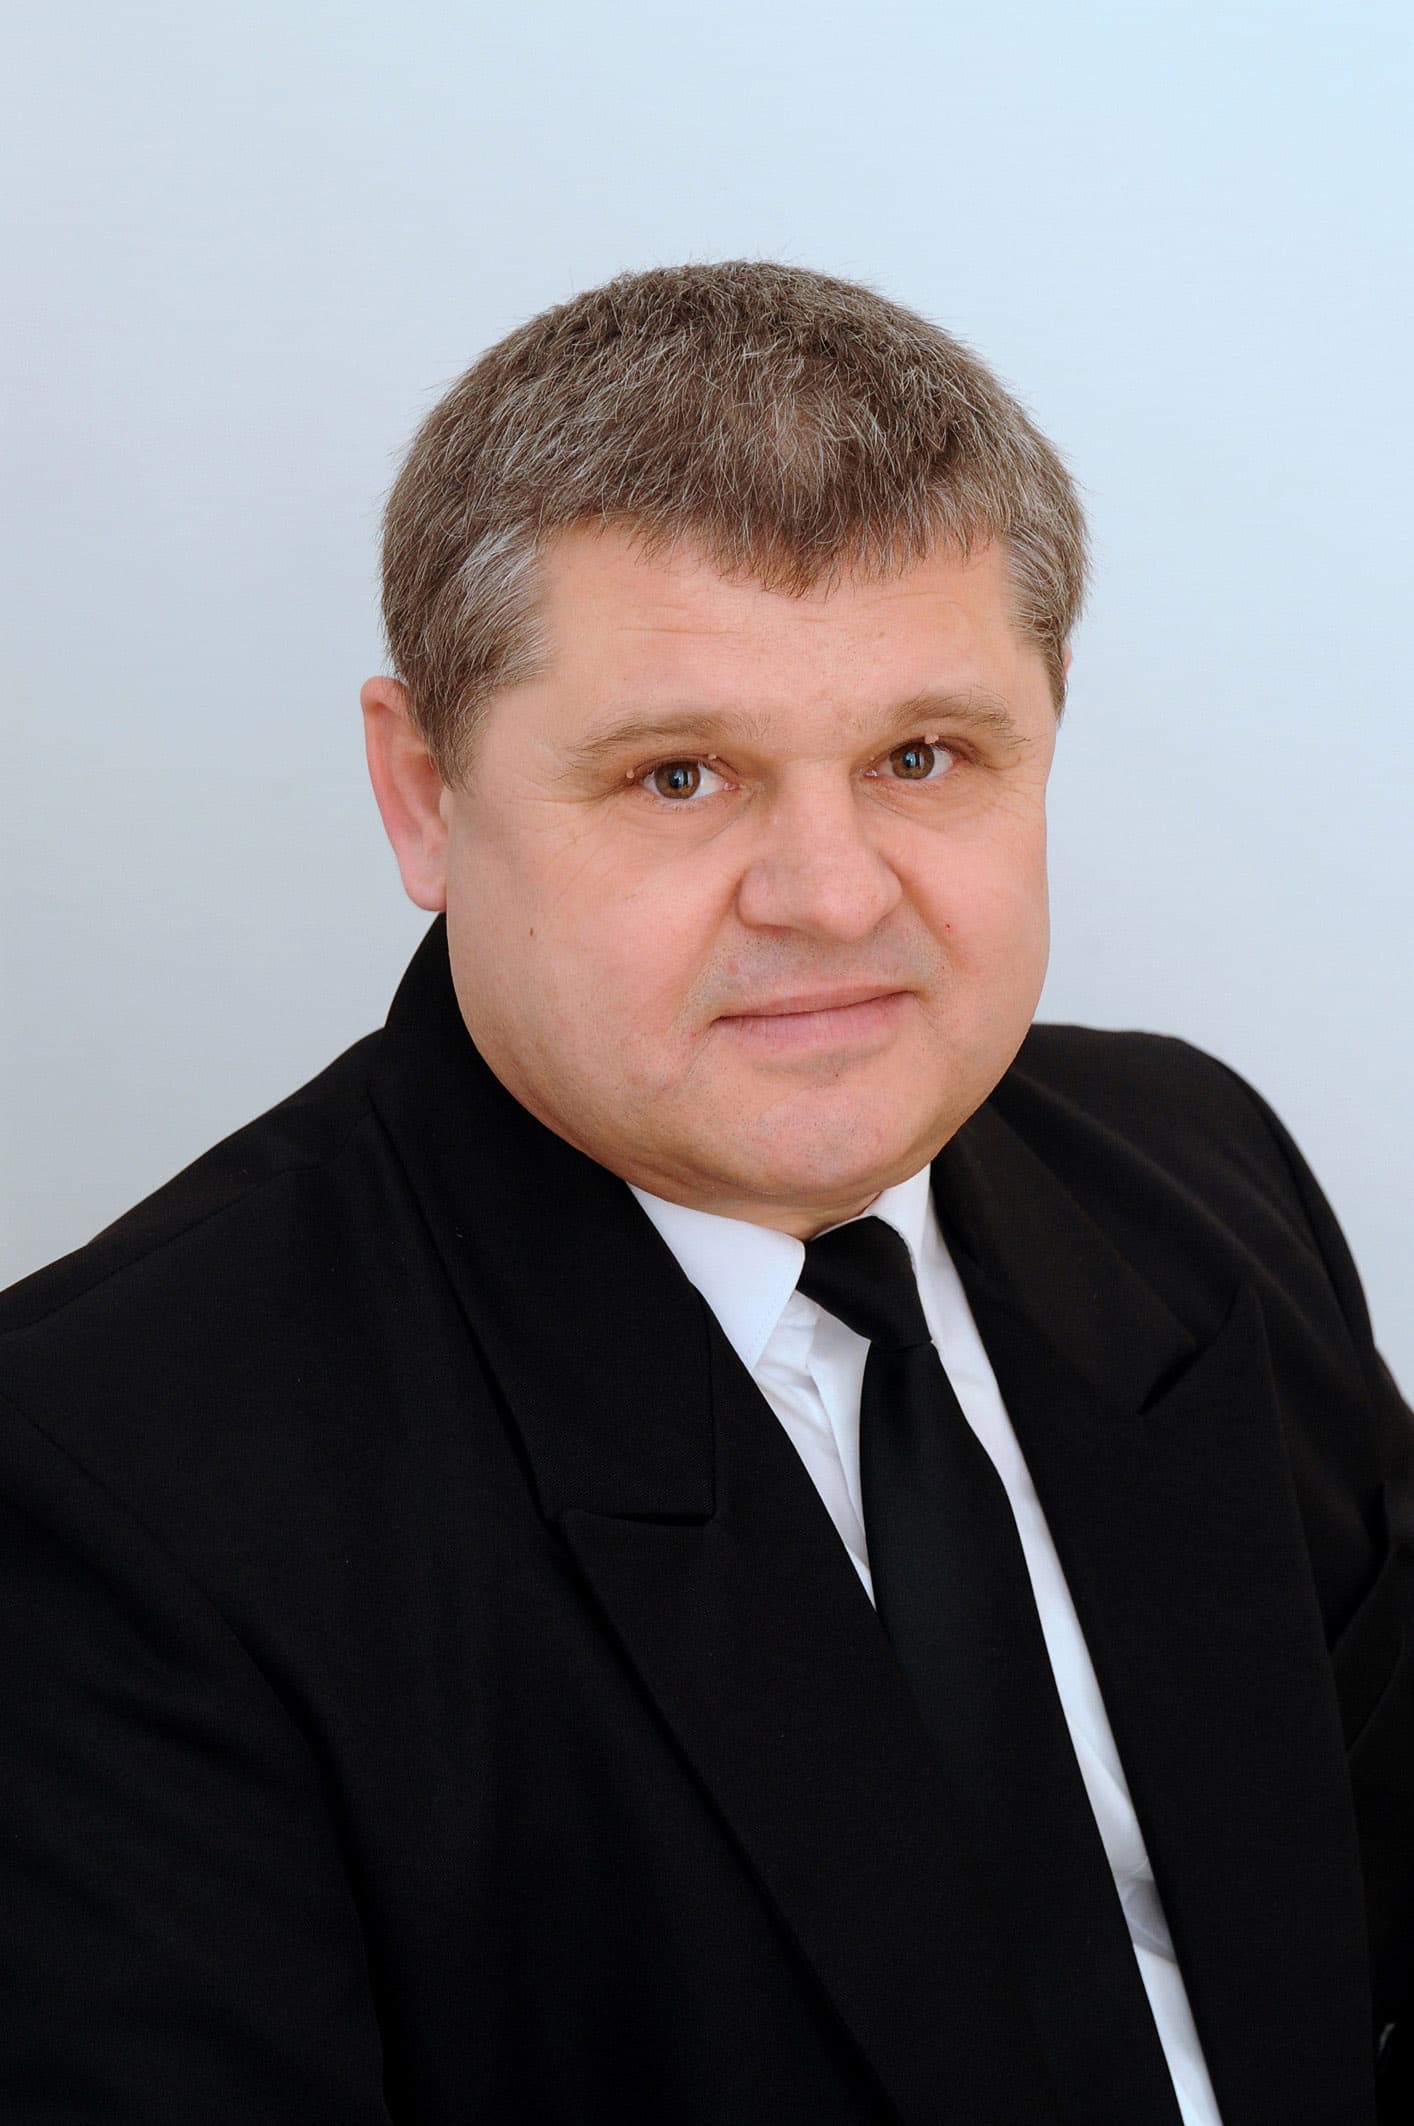 Rádóczki Pál Magyar Nemzeti Bank fegyveres biztonsági őrség fegyveres biztonsági őr Elnöki Elismerő Oklevélben részesült 2011-ben